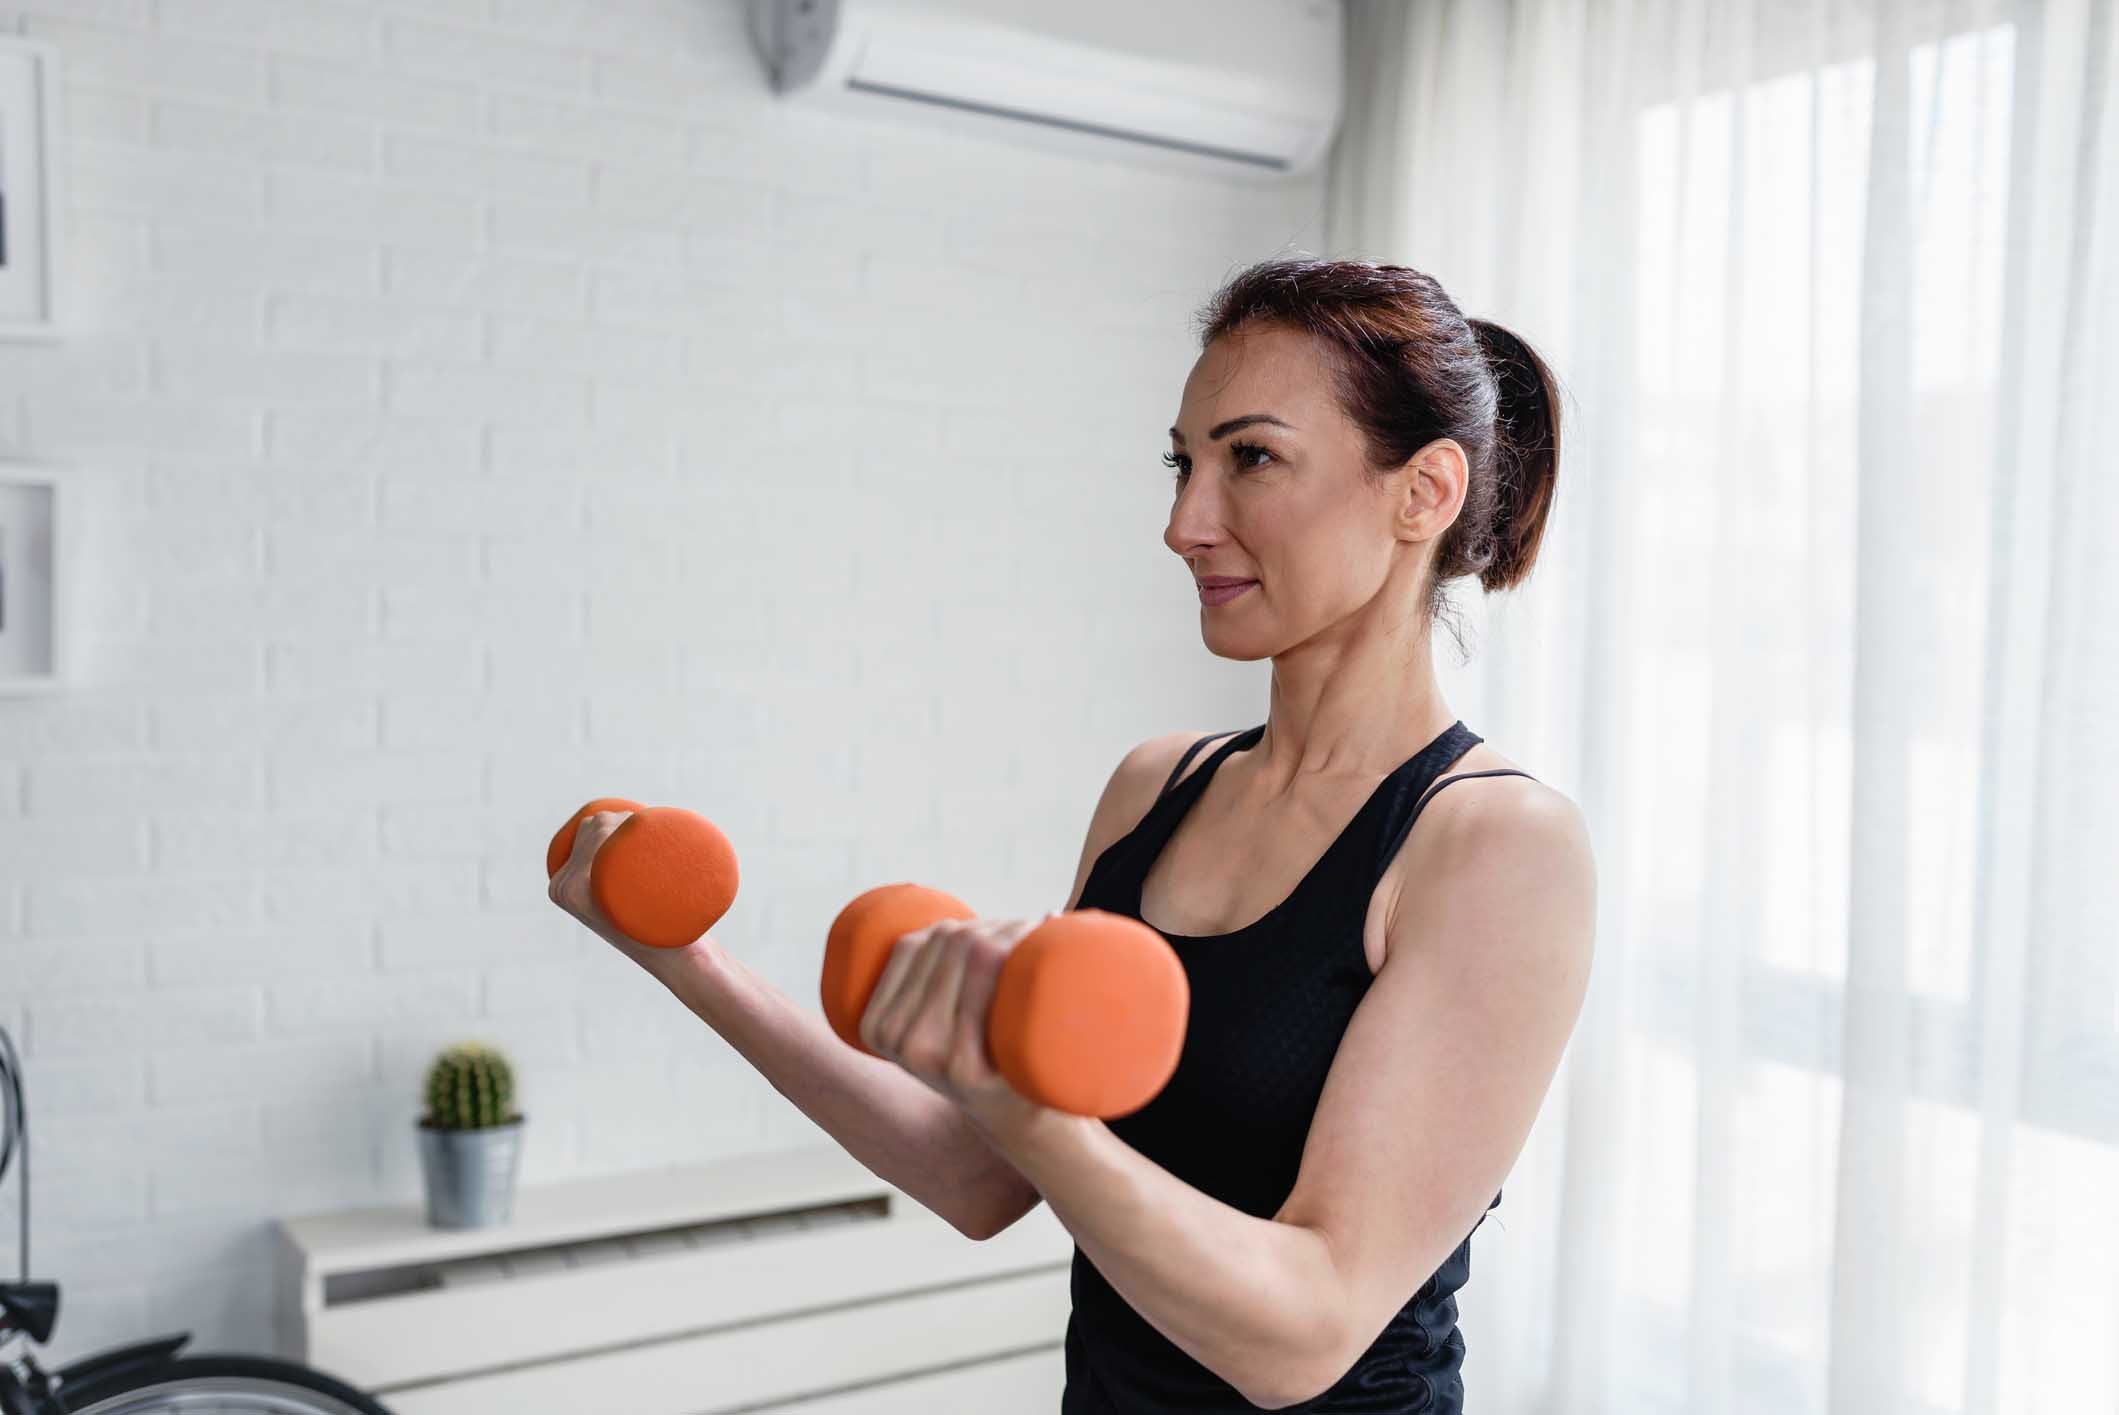 https://www.poise.com/-/media/feature/poise/na/us/article/hero-banner/fitness-nutrition/woman-doing-dumbbell-exercises.jpg?rev=-1